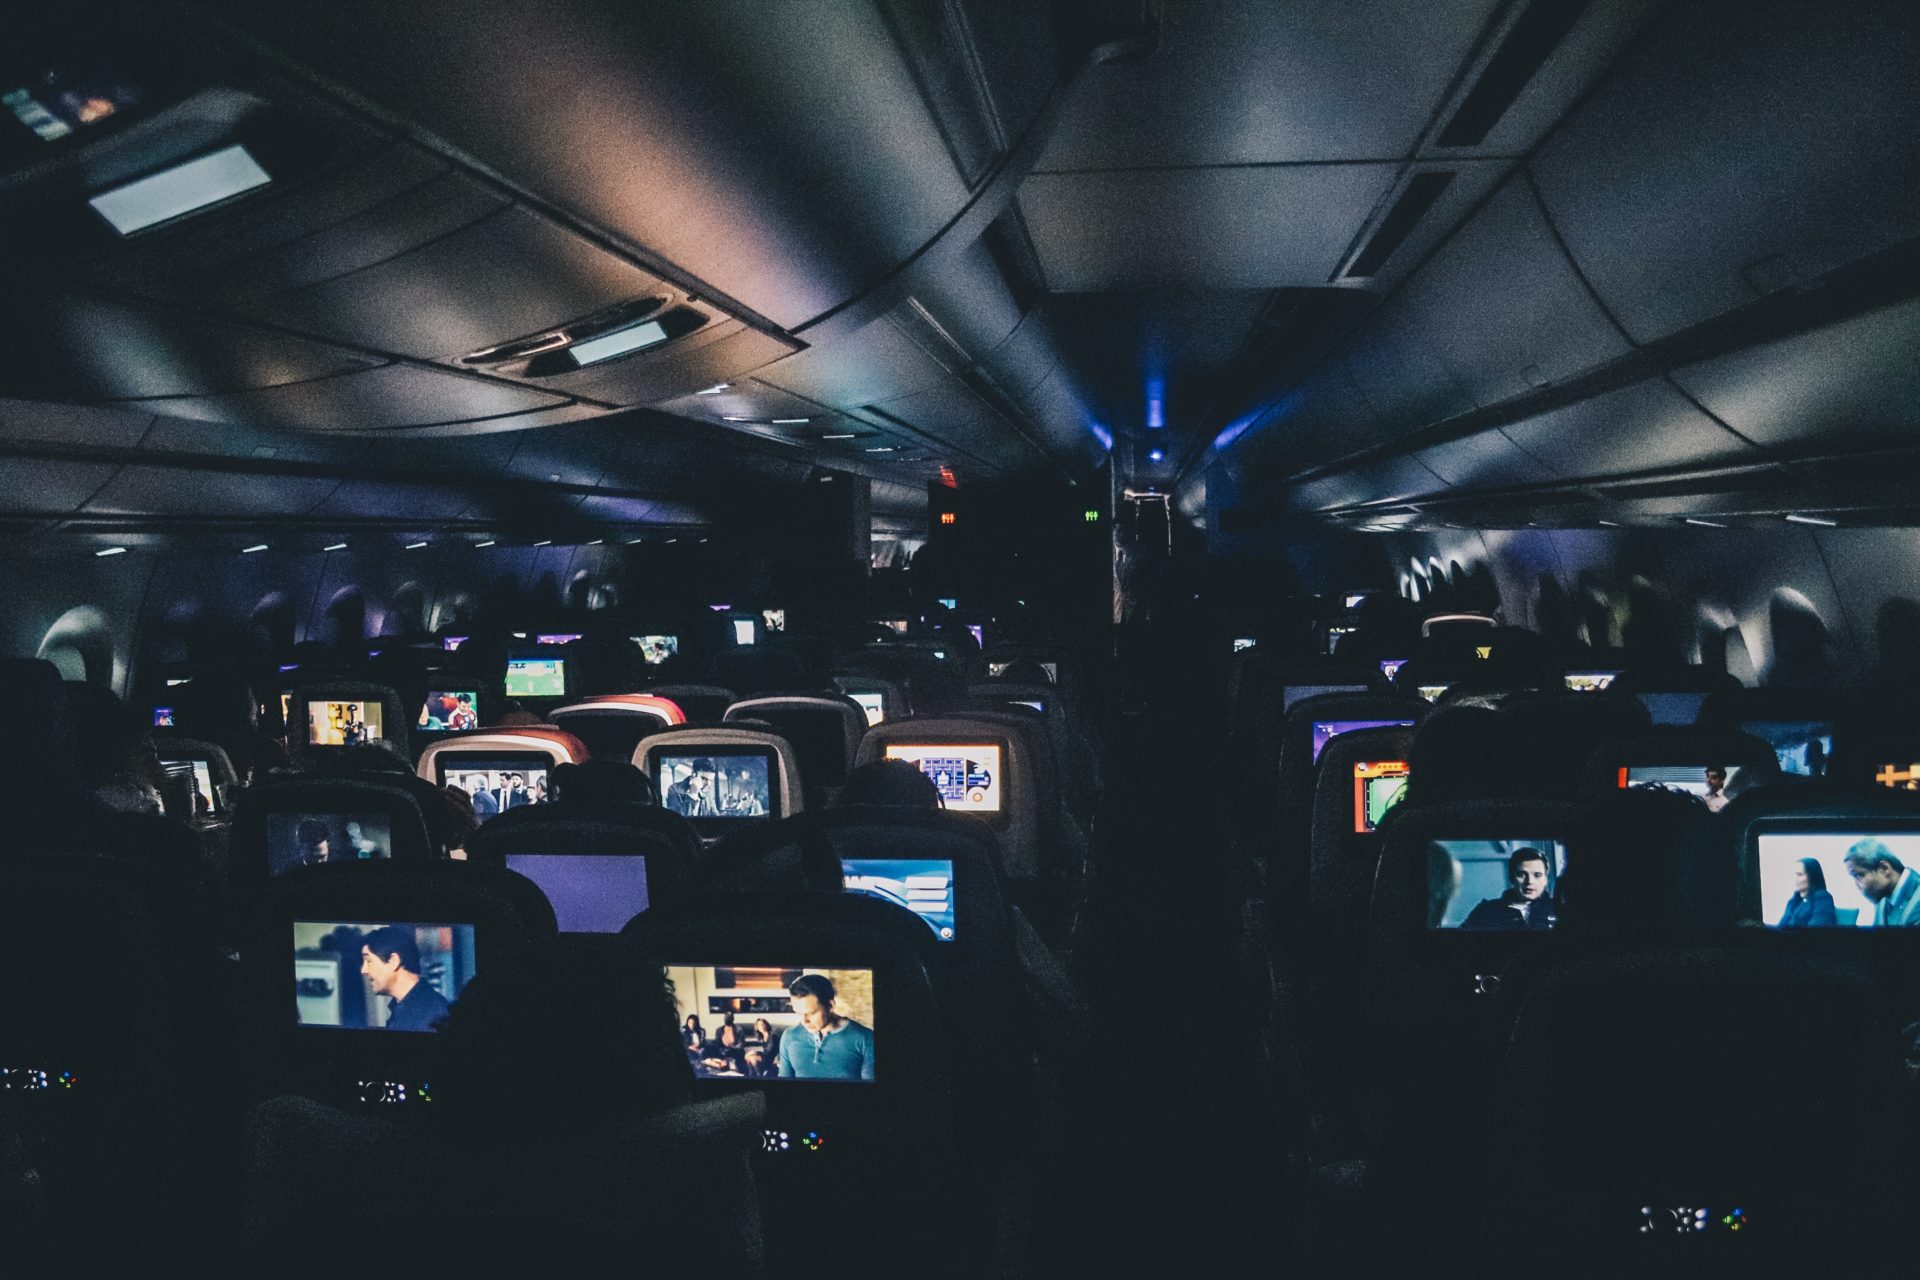 Foto tirada dos fundos de um avião no escuro, com todas as tvzinhas acesas com alguma coisa passando